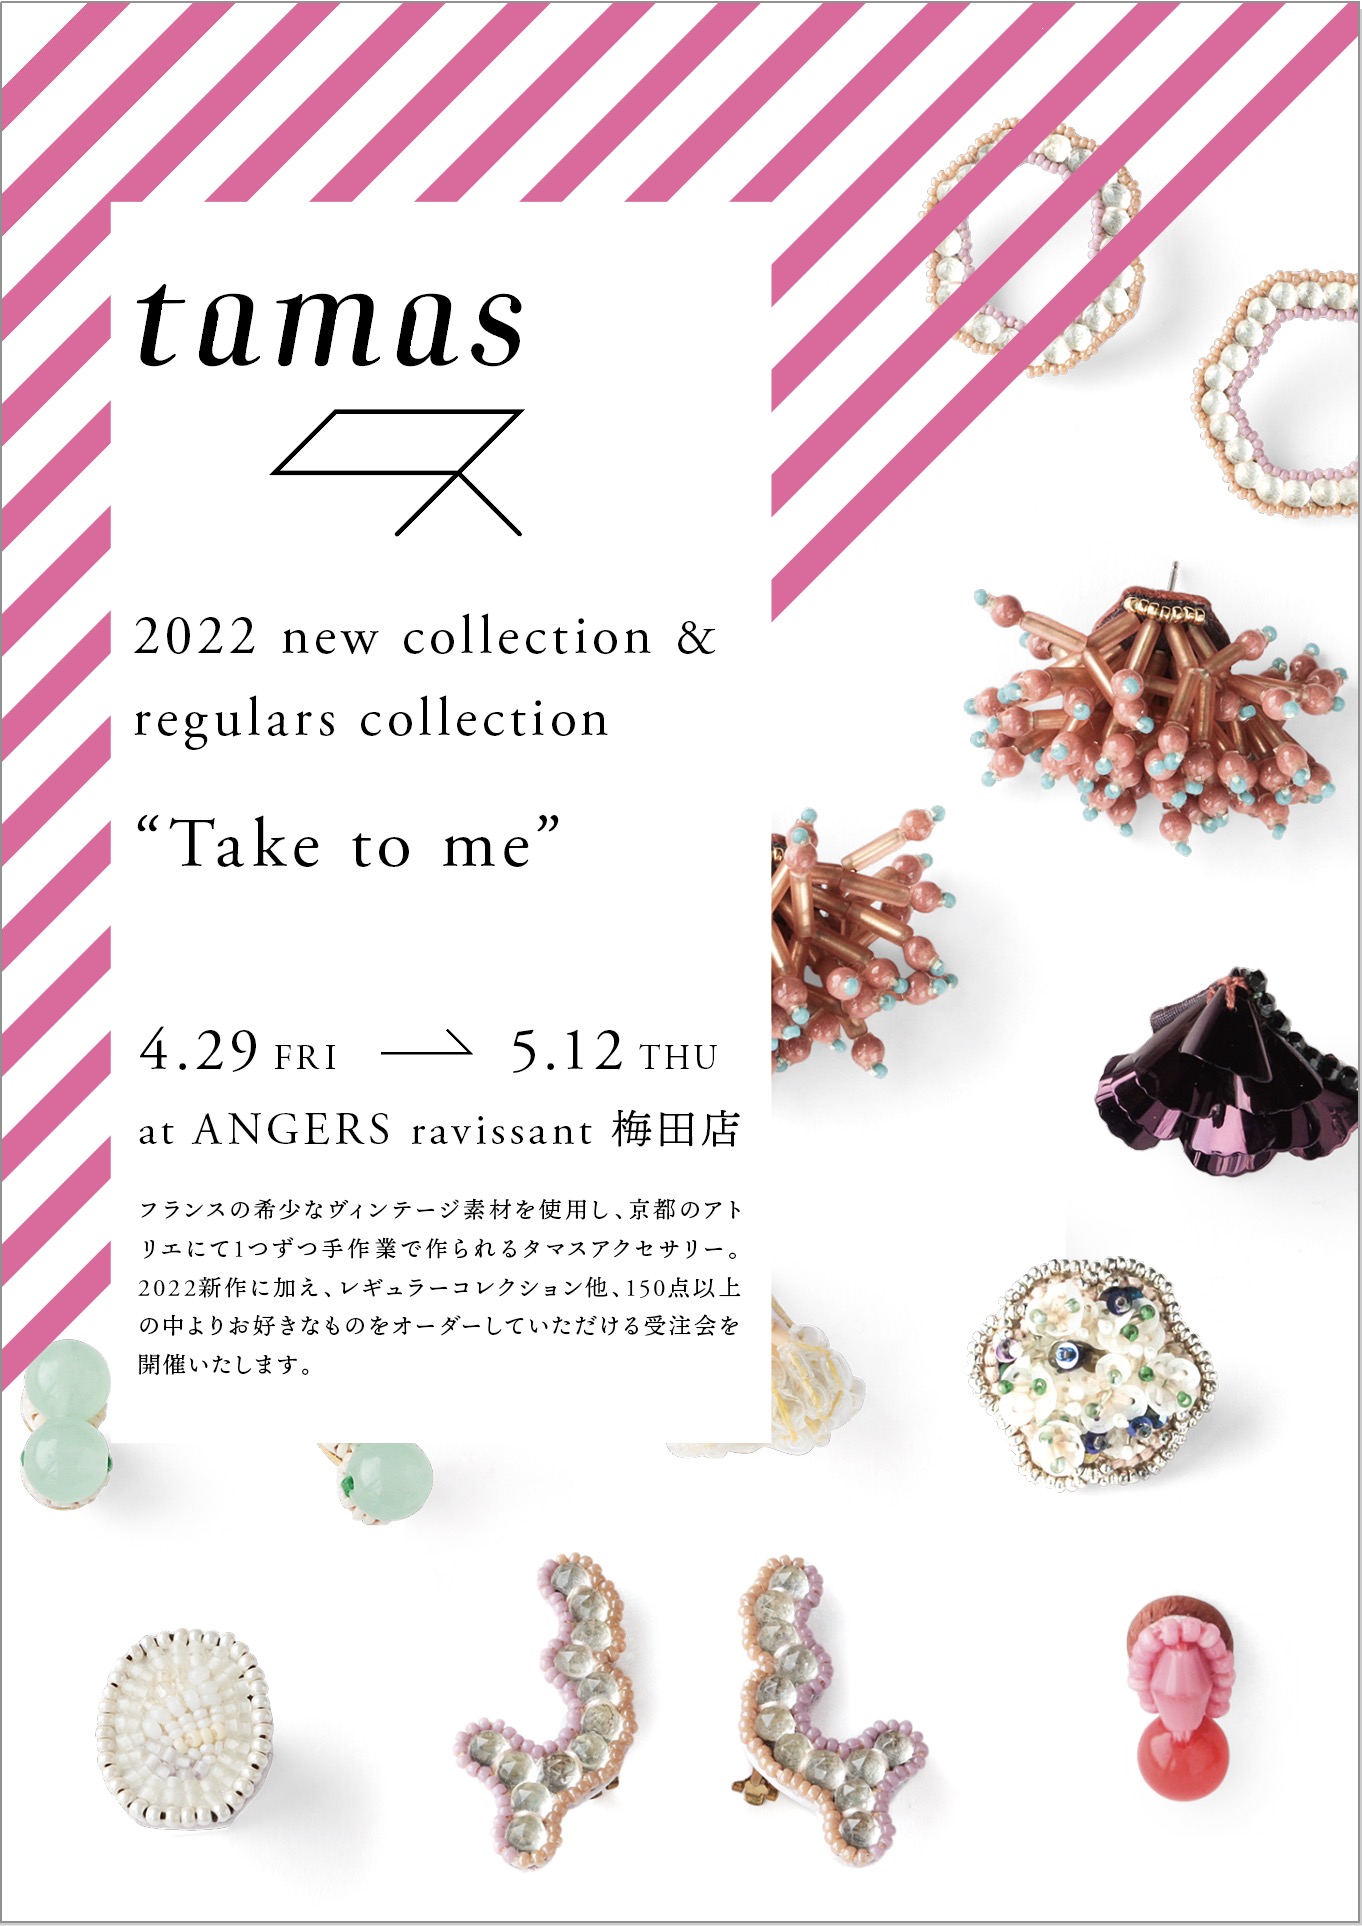 アウトドア 食器 tamas 2022 new collection & regulars collection “Take to me 